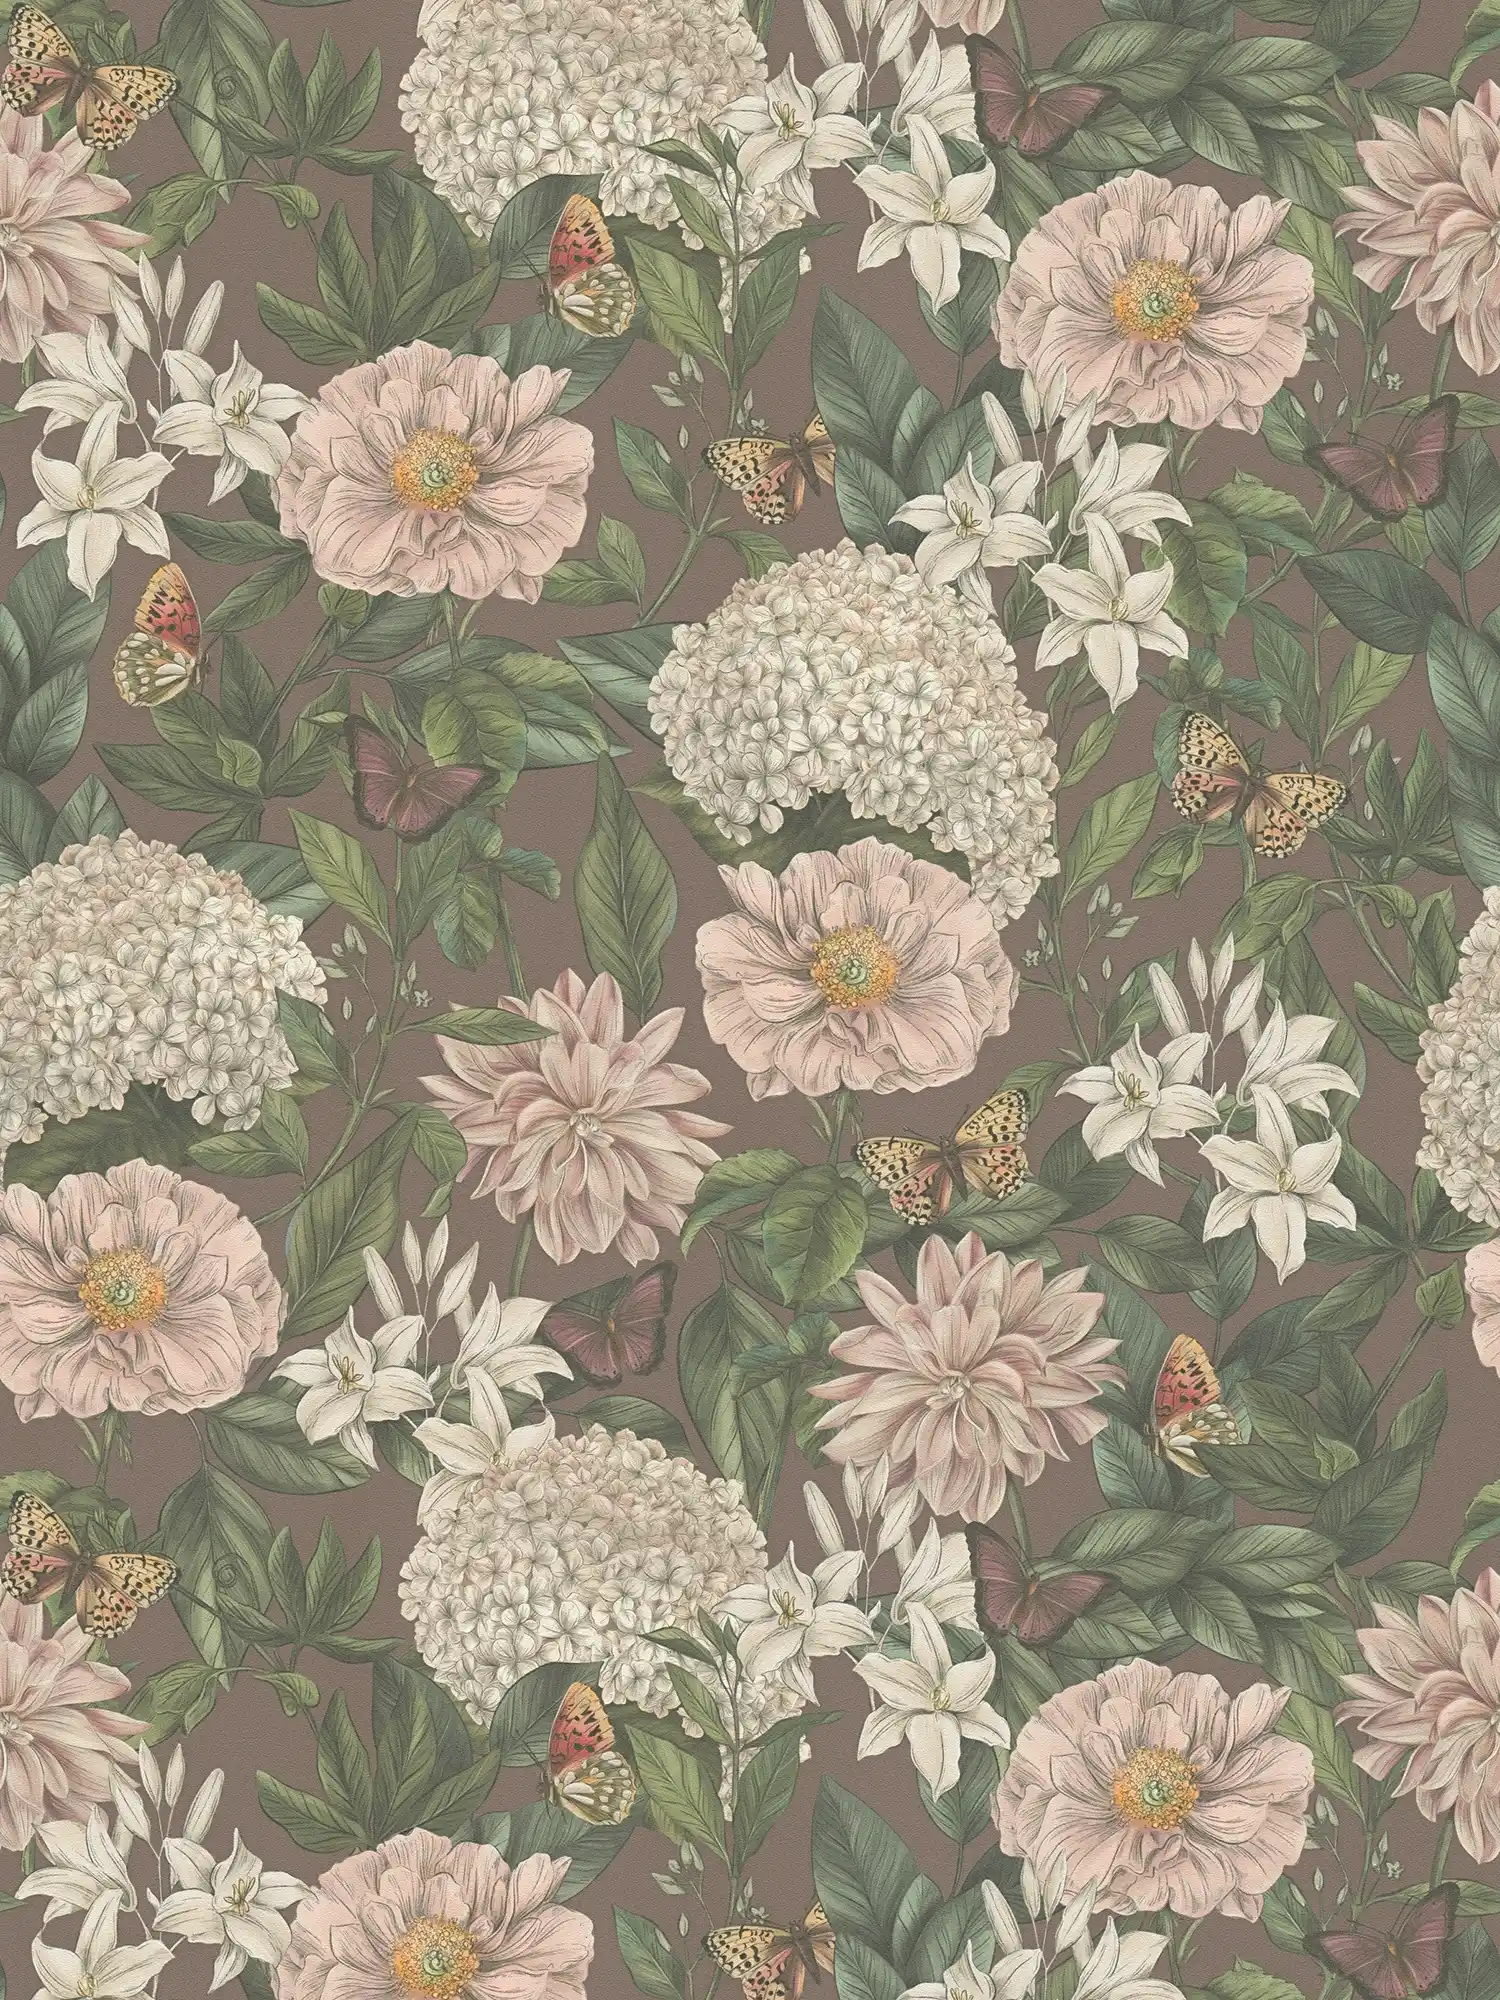 Modern wallpaper floral with flowers & butterflies textured matt - bordeaux, pink, dark green
